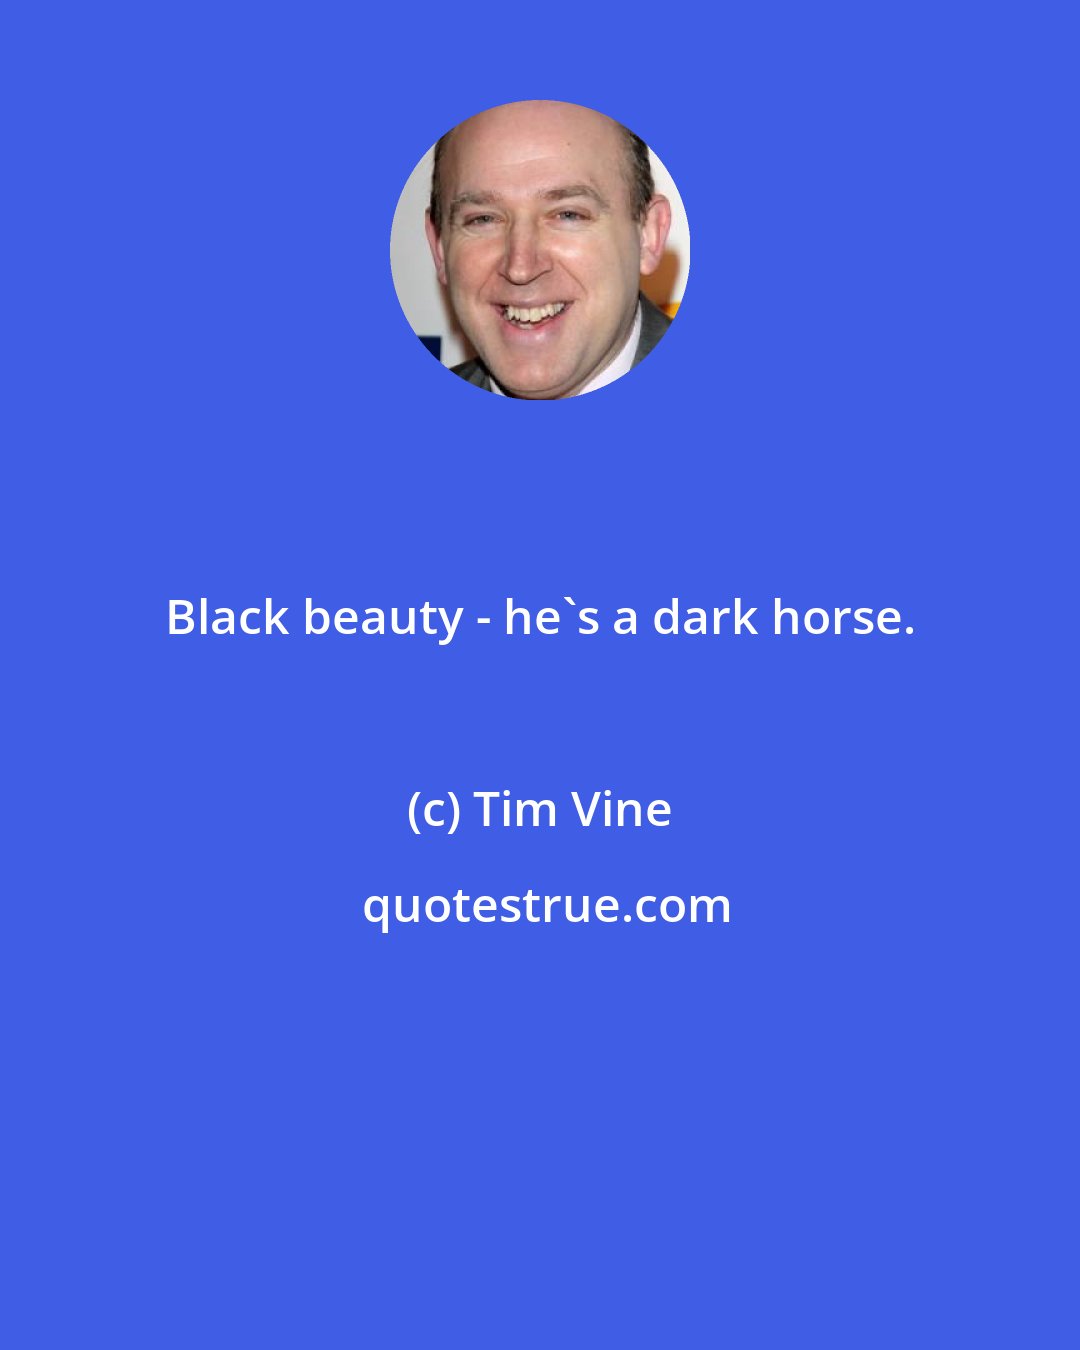 Tim Vine: Black beauty - he's a dark horse.